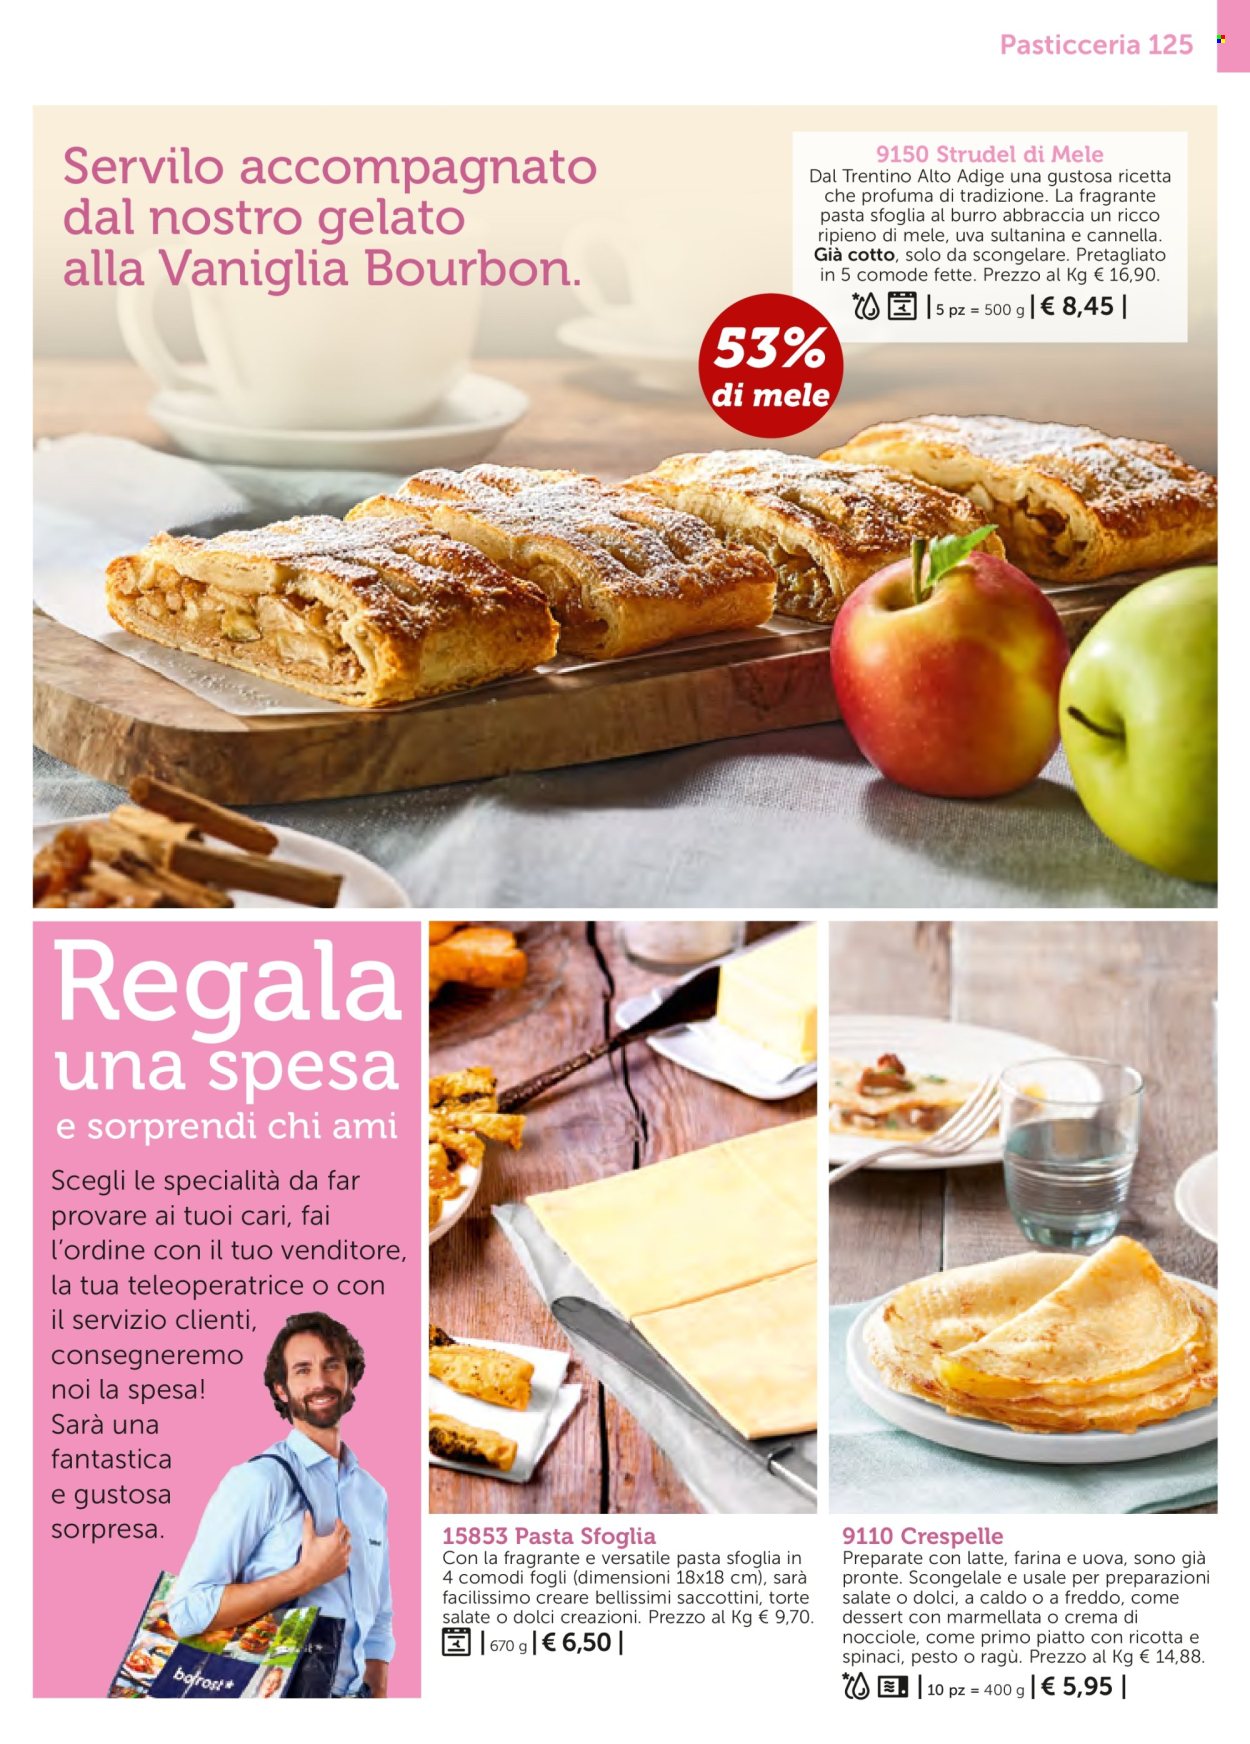 thumbnail - Volantino Bofrost - Prodotti in offerta - strudel, crespelle, ragù, pasta sfoglia, gelato. Pagina 125.